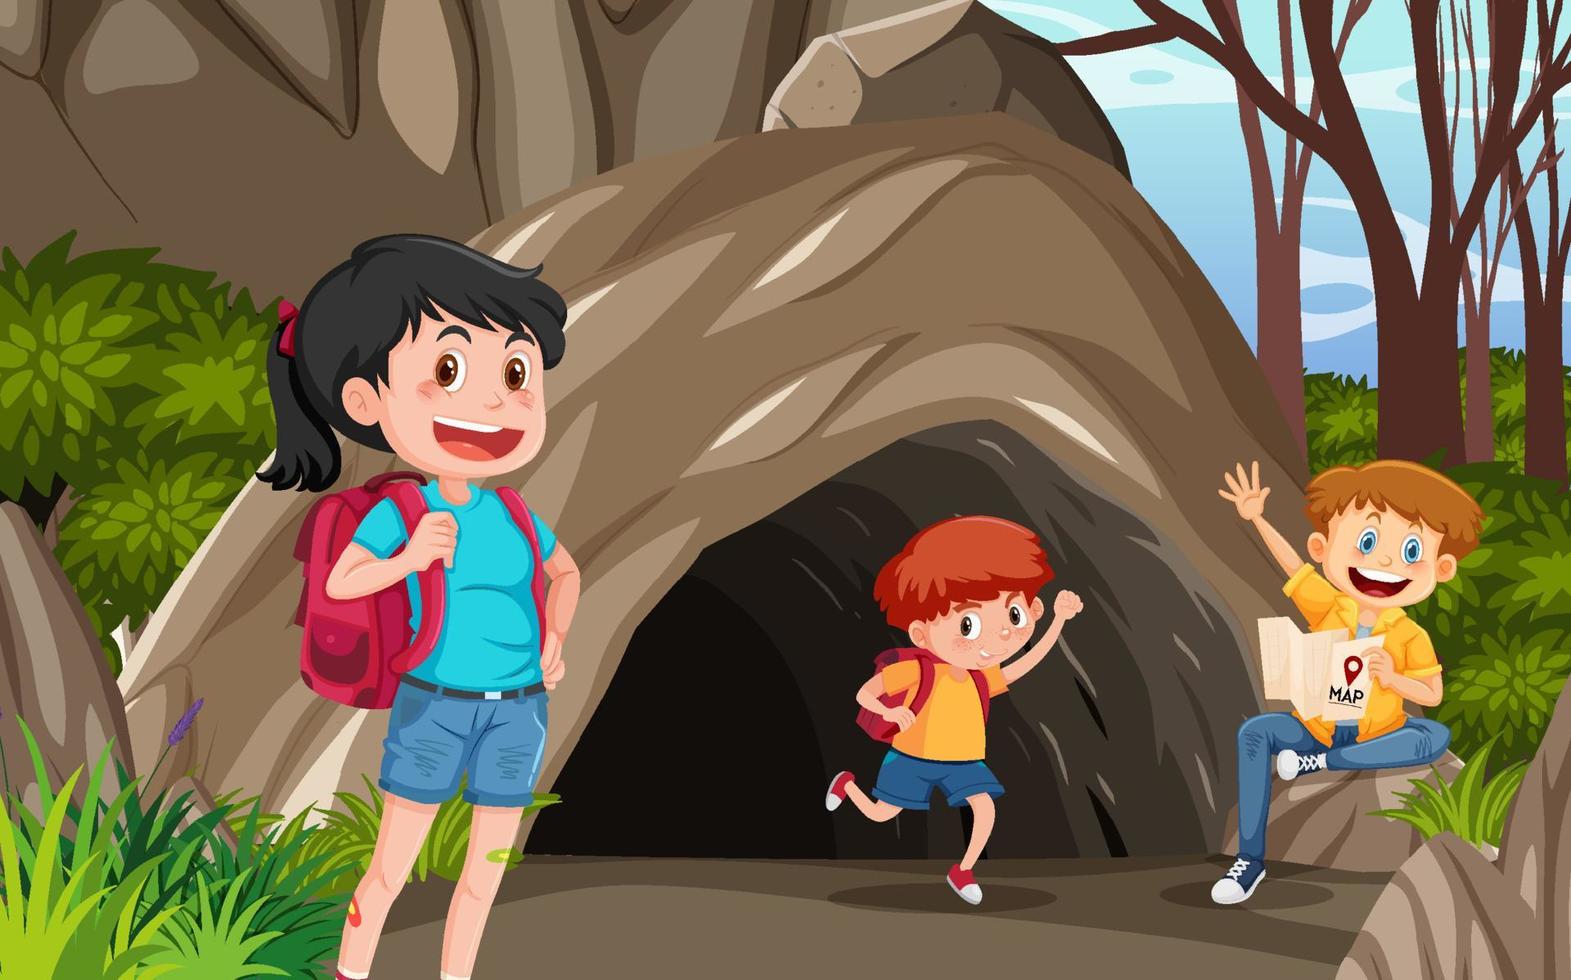 caverna na cena da floresta com crianças exploradoras vetor